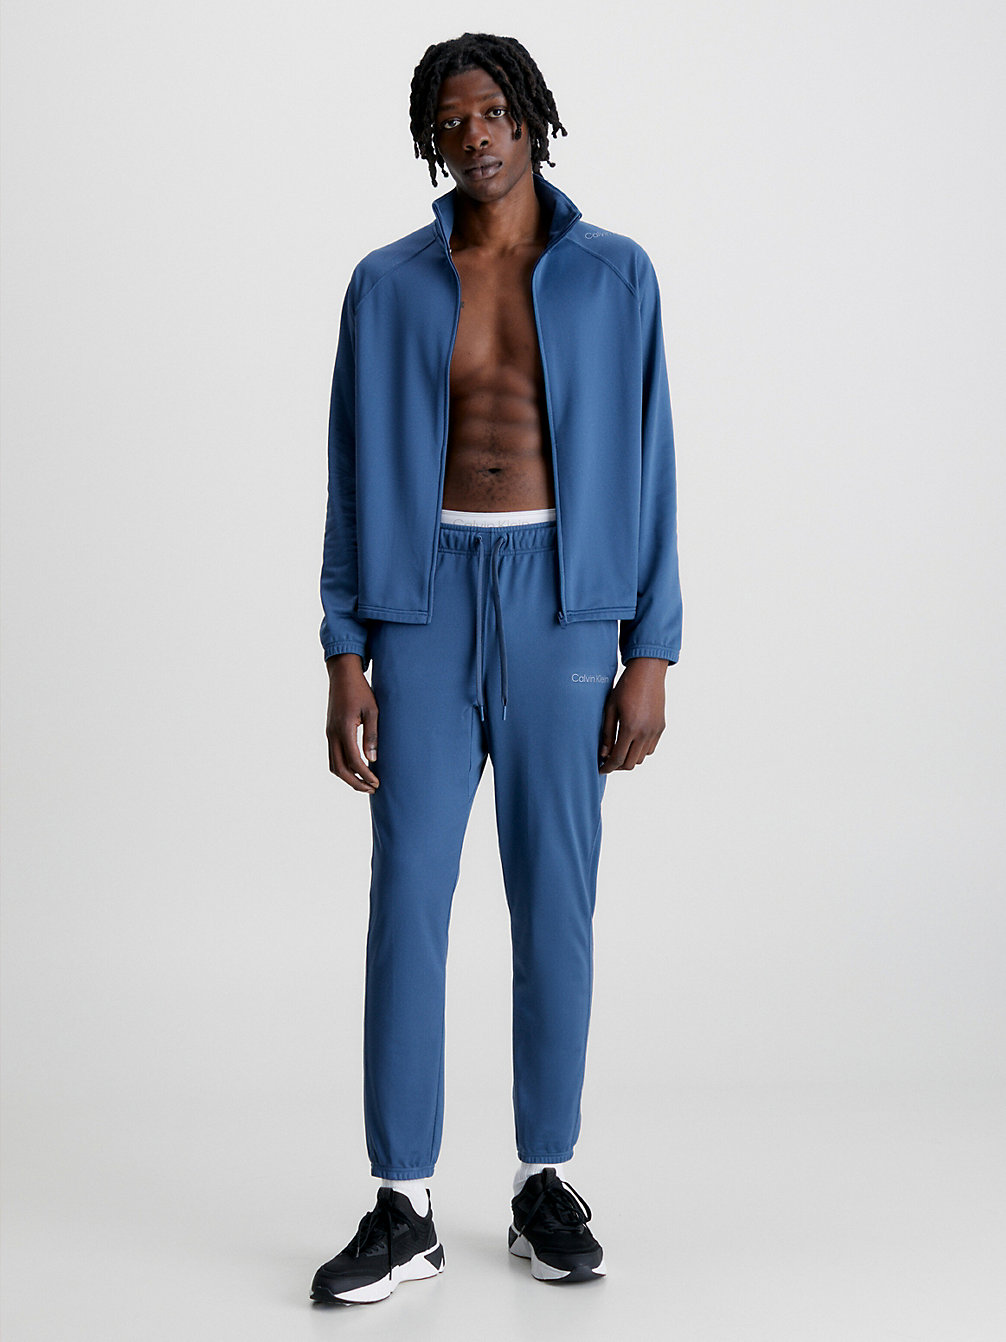 CRAYON BLUE > Bequemer Trainingsanzug > undefined Herren - Calvin Klein